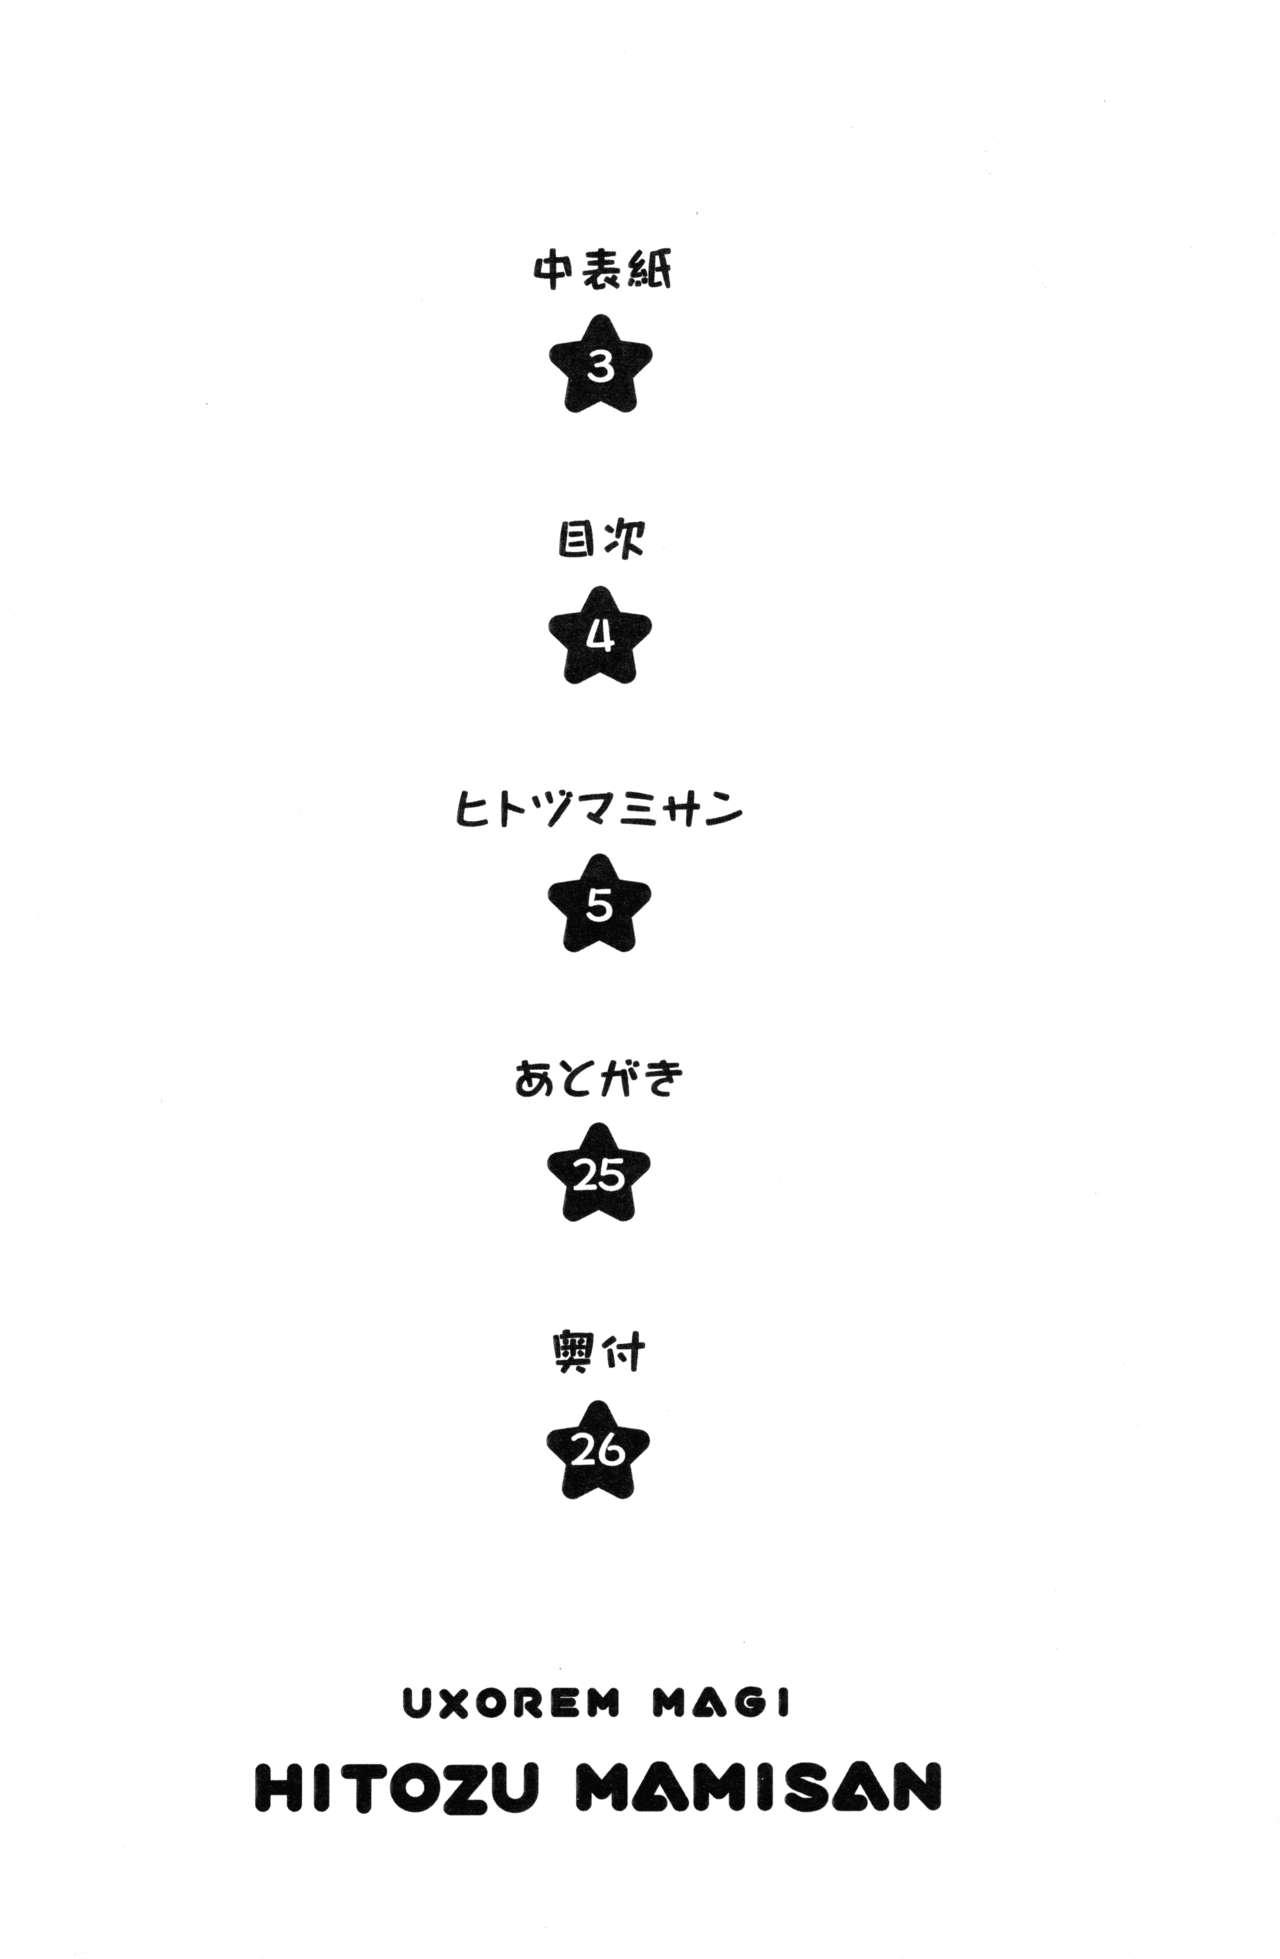 Tattoos HitozuMami-san - Puella magi madoka magica Pigtails - Page 3